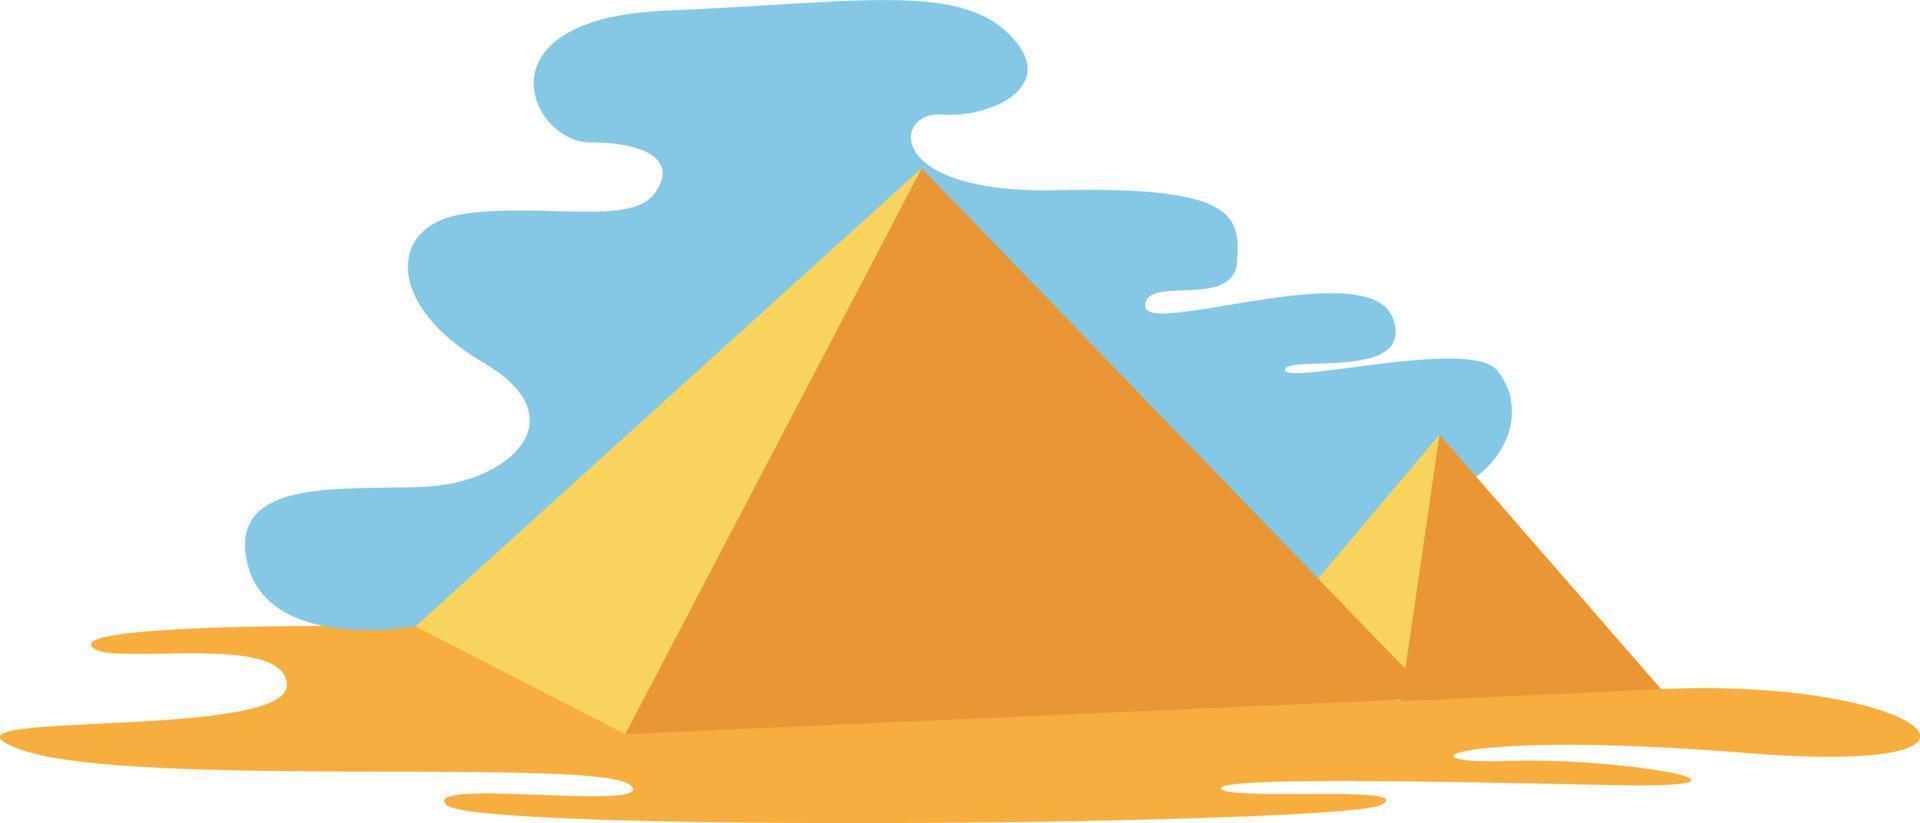 pirámides, ilustración, vector sobre fondo blanco.